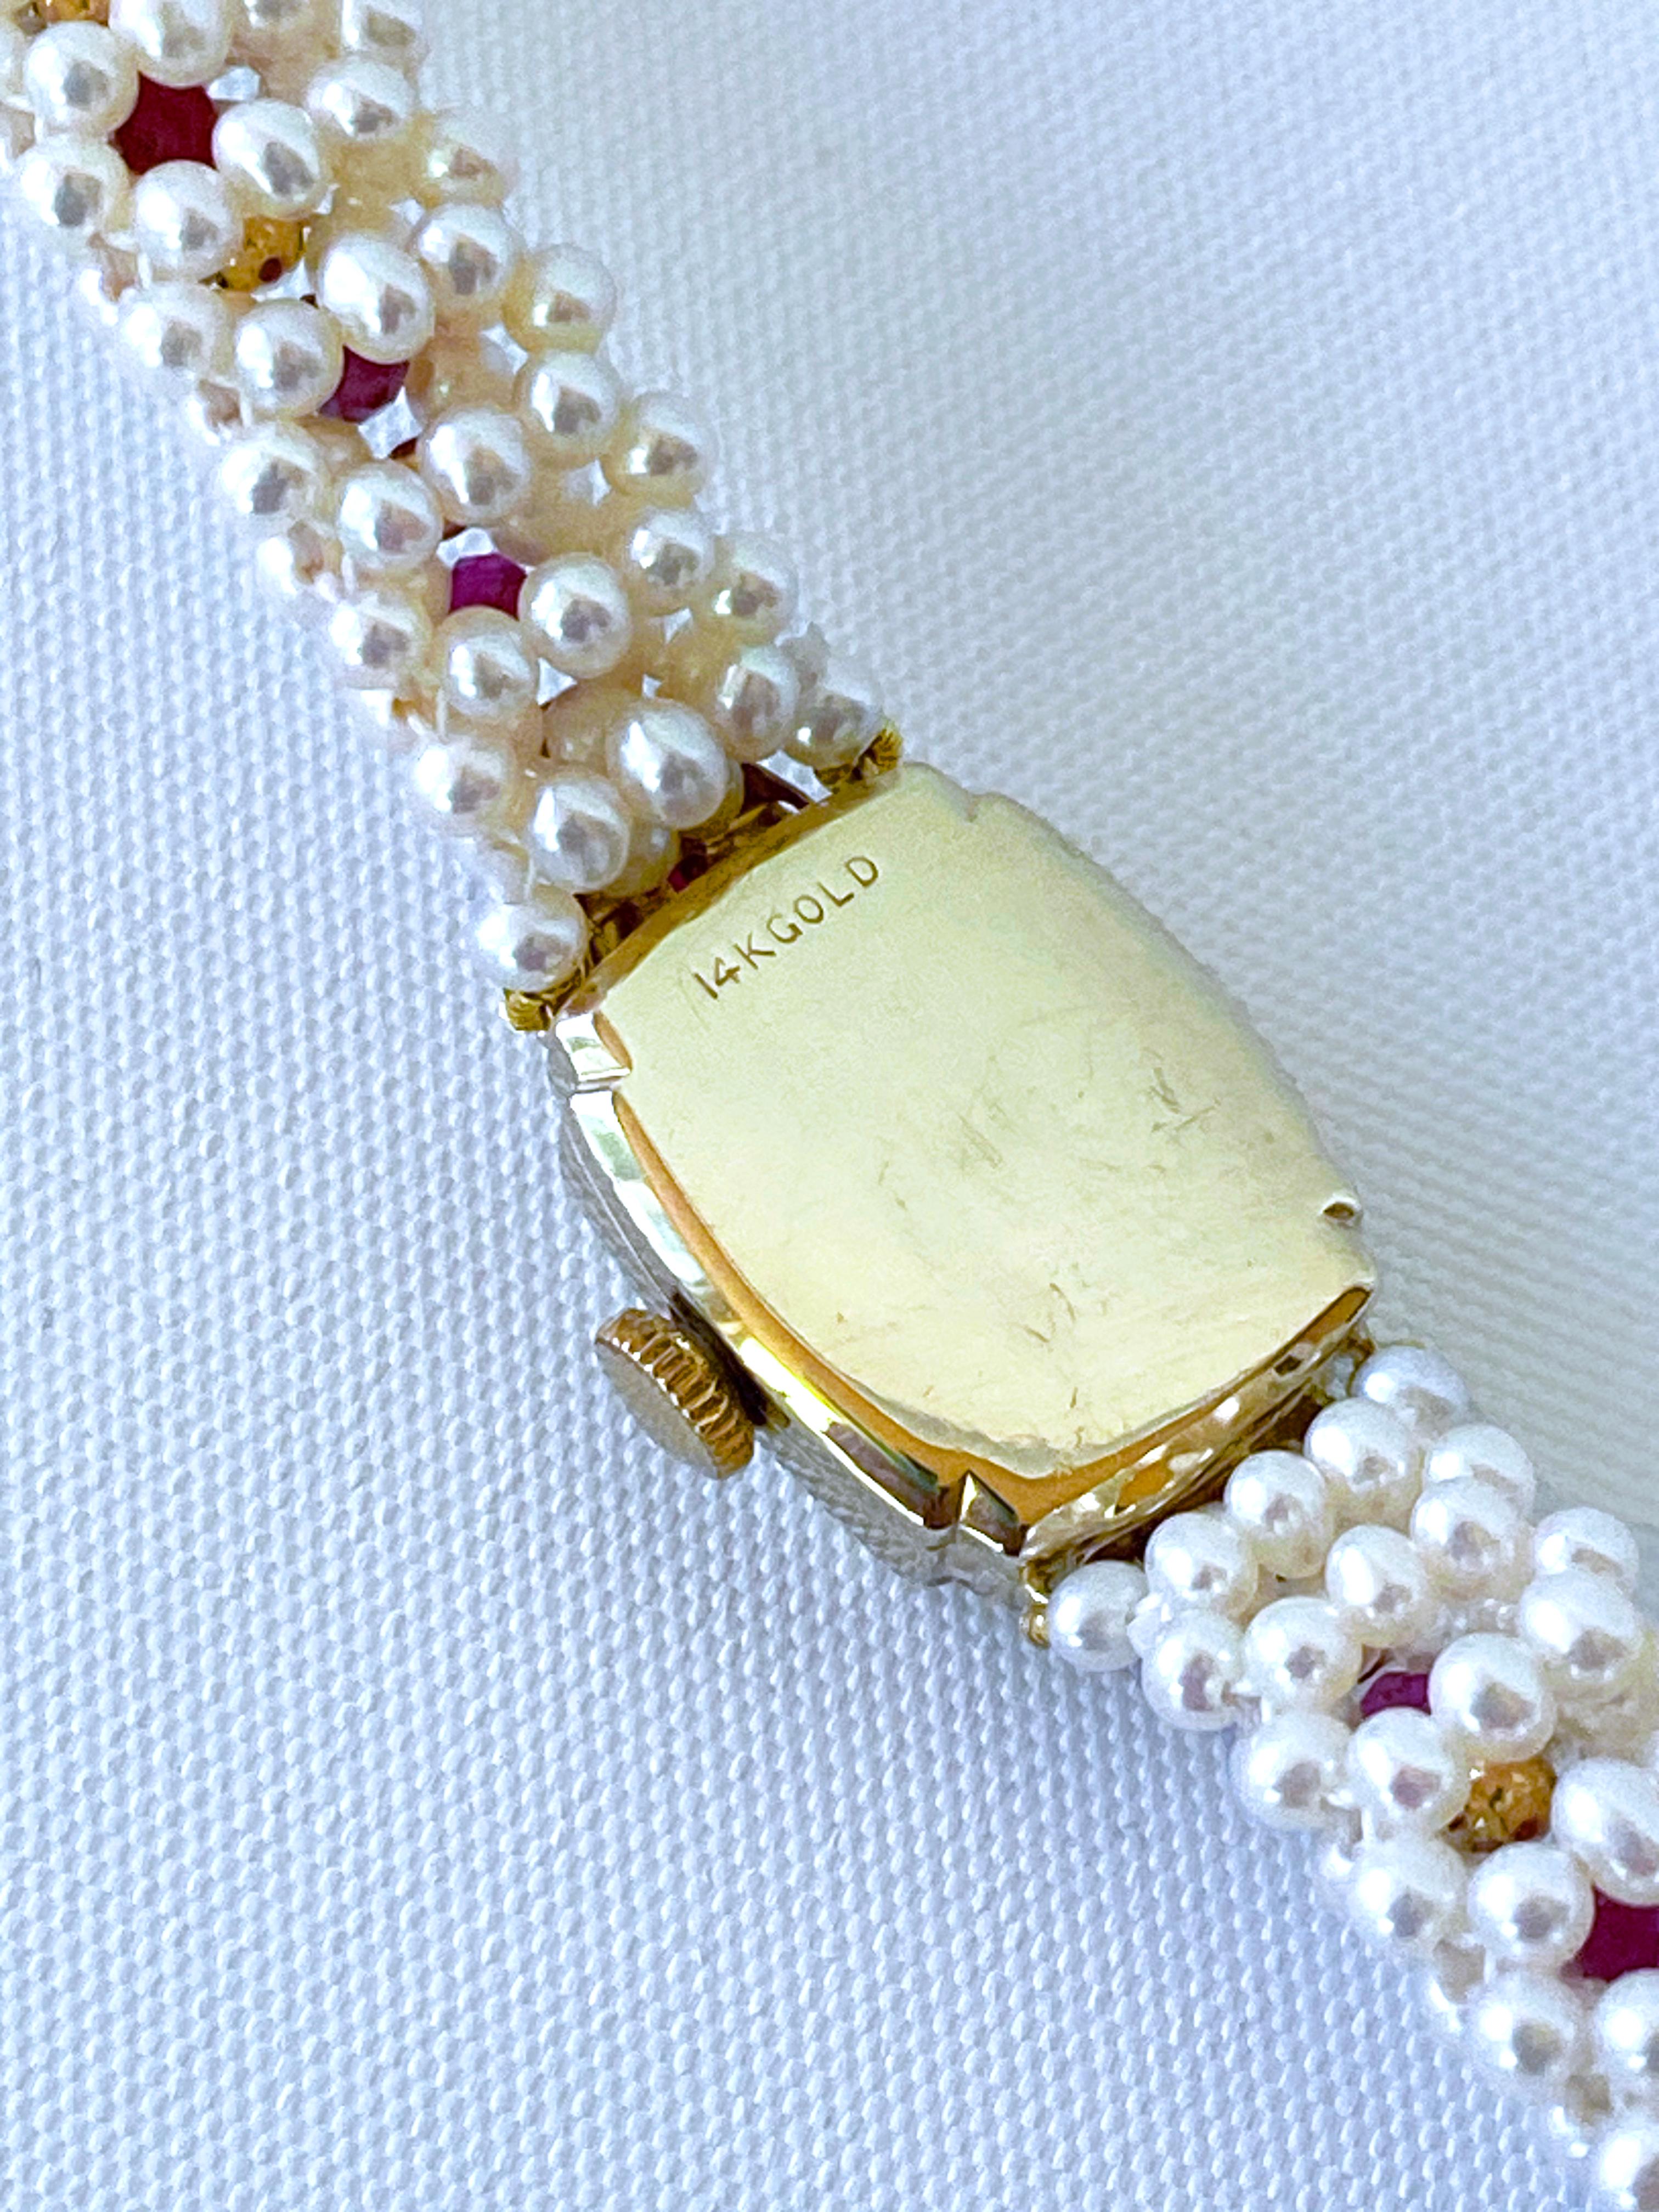 Cette magnifique montre vintage à cadran est transformée en une pièce intemporelle et élégante en perles, rubis et or jaune 14 carats. Estampillée et fabriquée en or jaune 14 carats massif, cette montre intemporelle est ravivée par des rubis